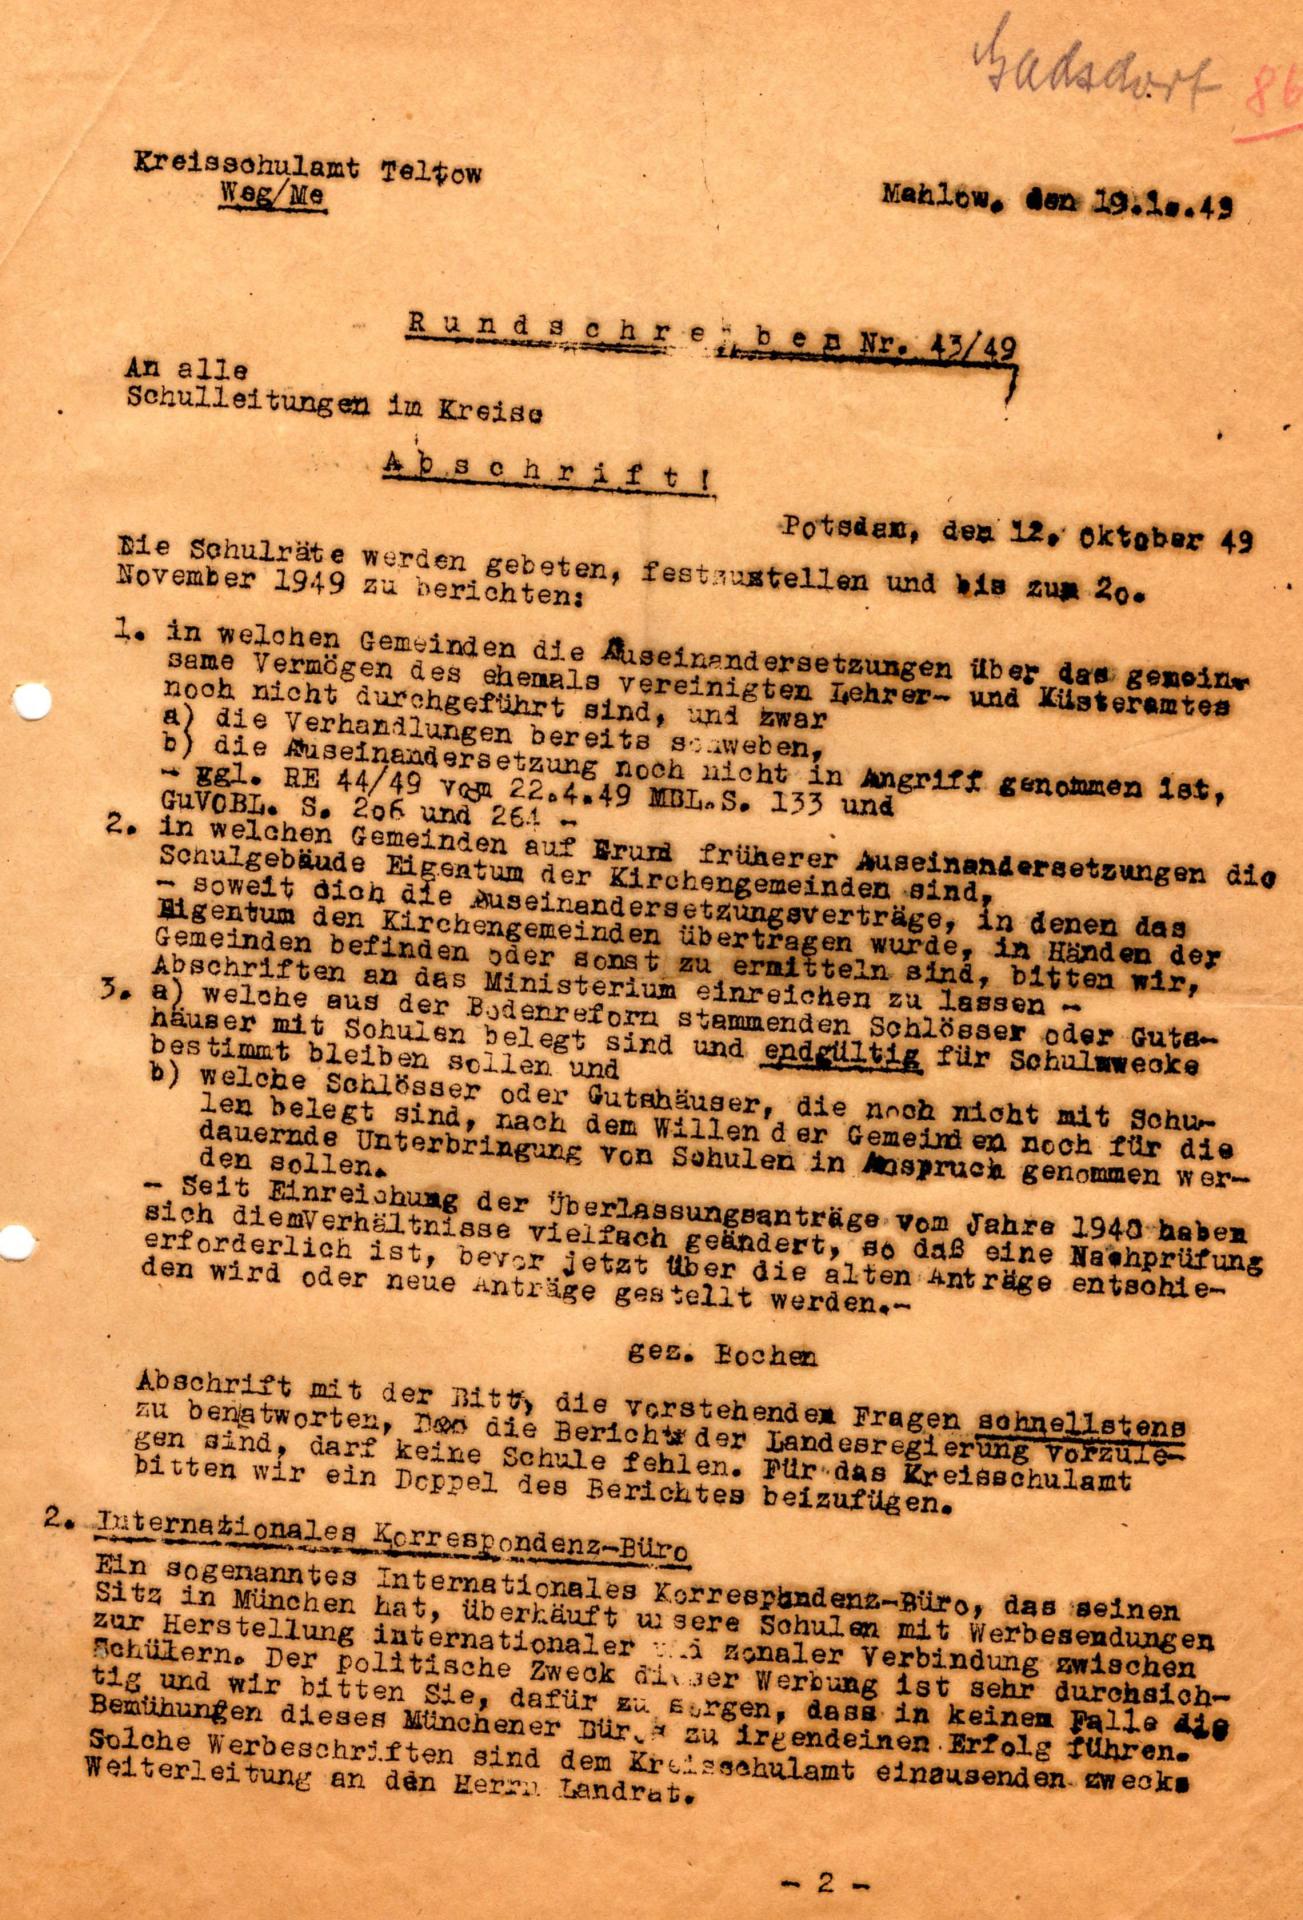 Rundschreiben 43-49 - Klärung gemeinsamer Vermögen Kirche-Gemeinde und Nutzung für Schulen - 29.10.1949